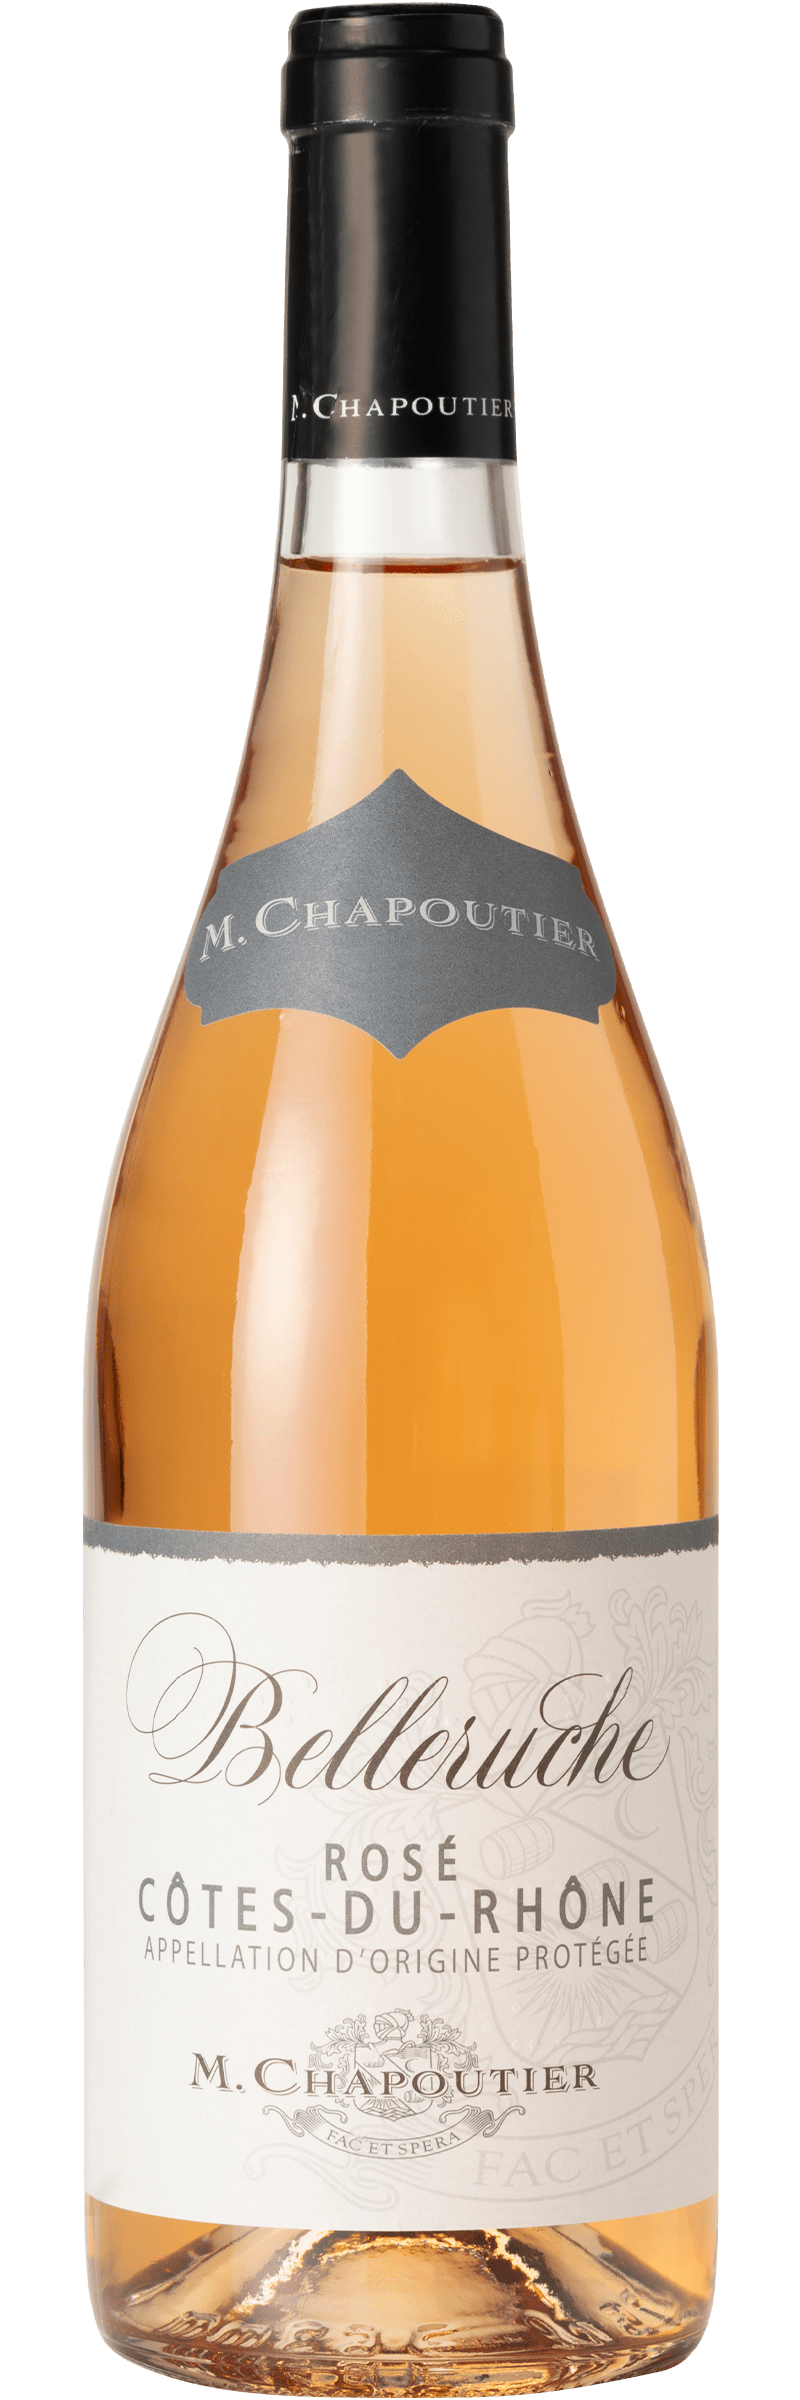 M. Chapoutier Côtes-du-Rhône Belleruche Rosé 2019 75cl